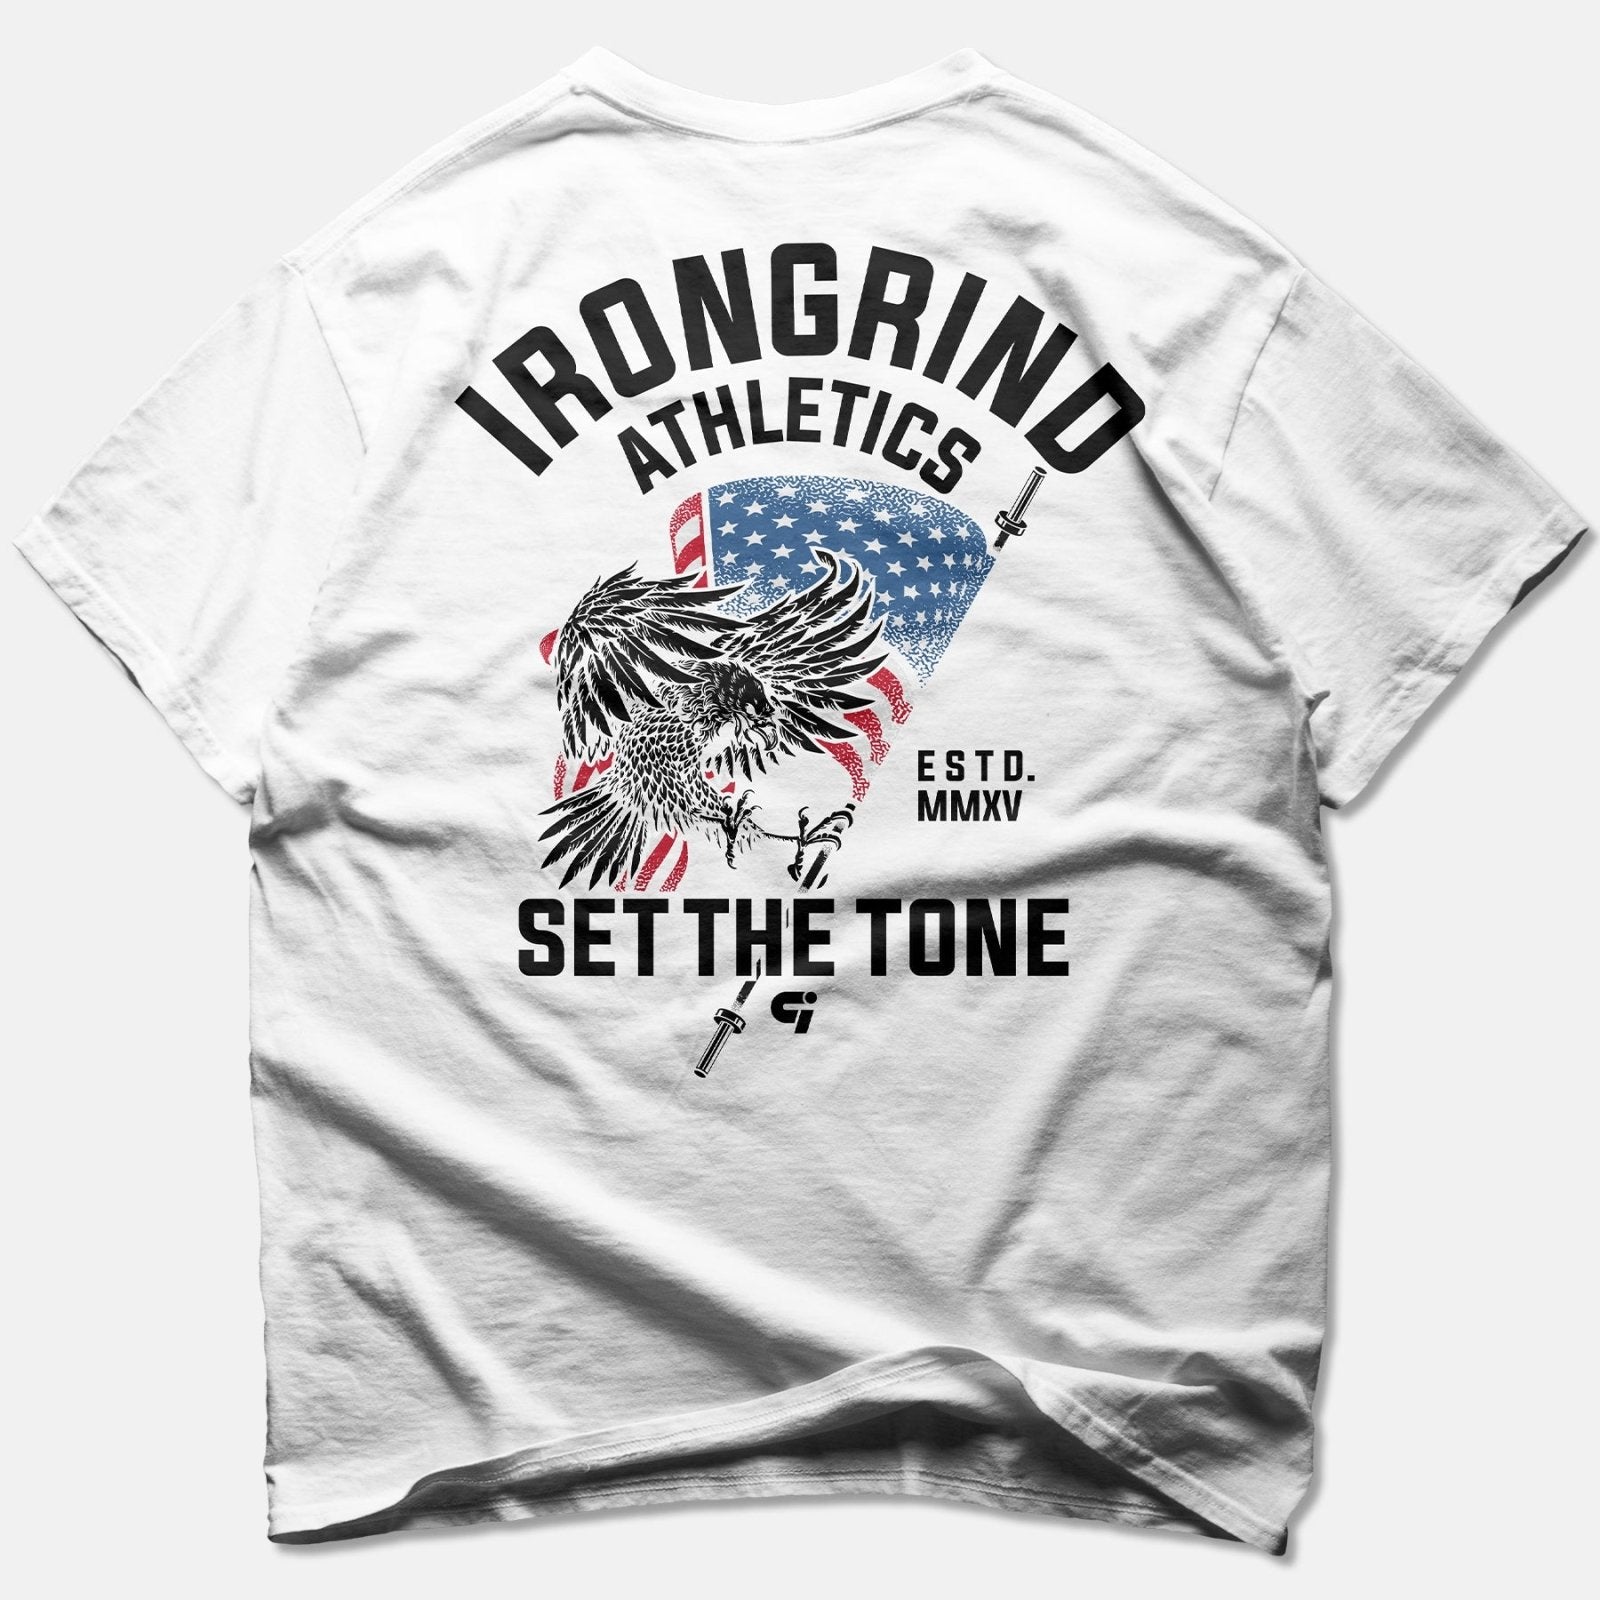 Freedom 'Eagle' T-shirt - IronGrind Athletics - activewear - gymshark - alphalete